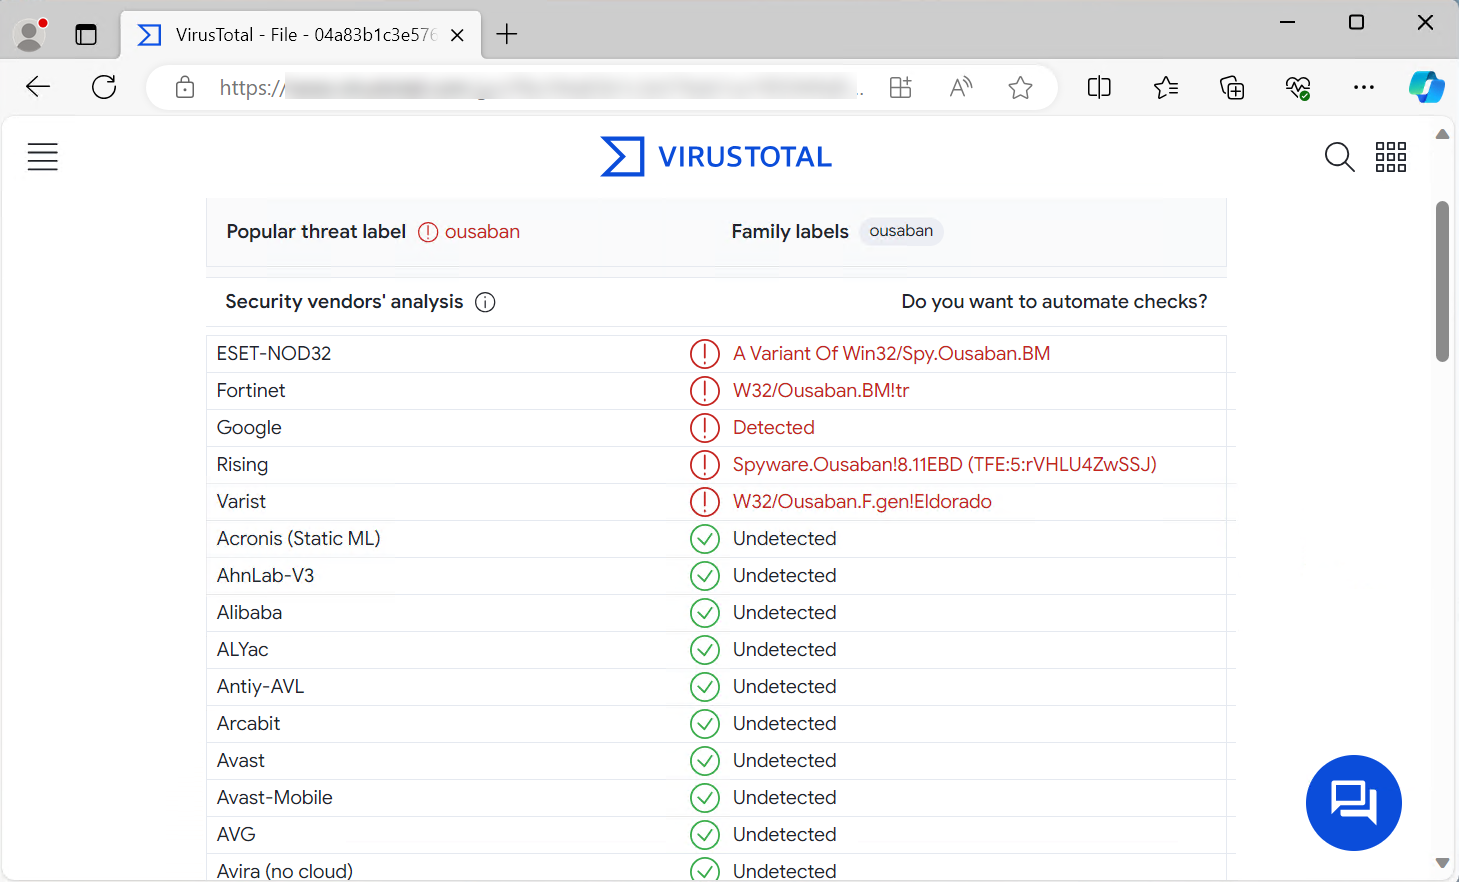 En la imagen se muestra una captura de los resultados del análisis hecho en el sitio web 'VirusTotal' sobre el archivo que contiene código malicioso, donde se muestra el resultado positivo detectado el troyano bancario Ousaban.